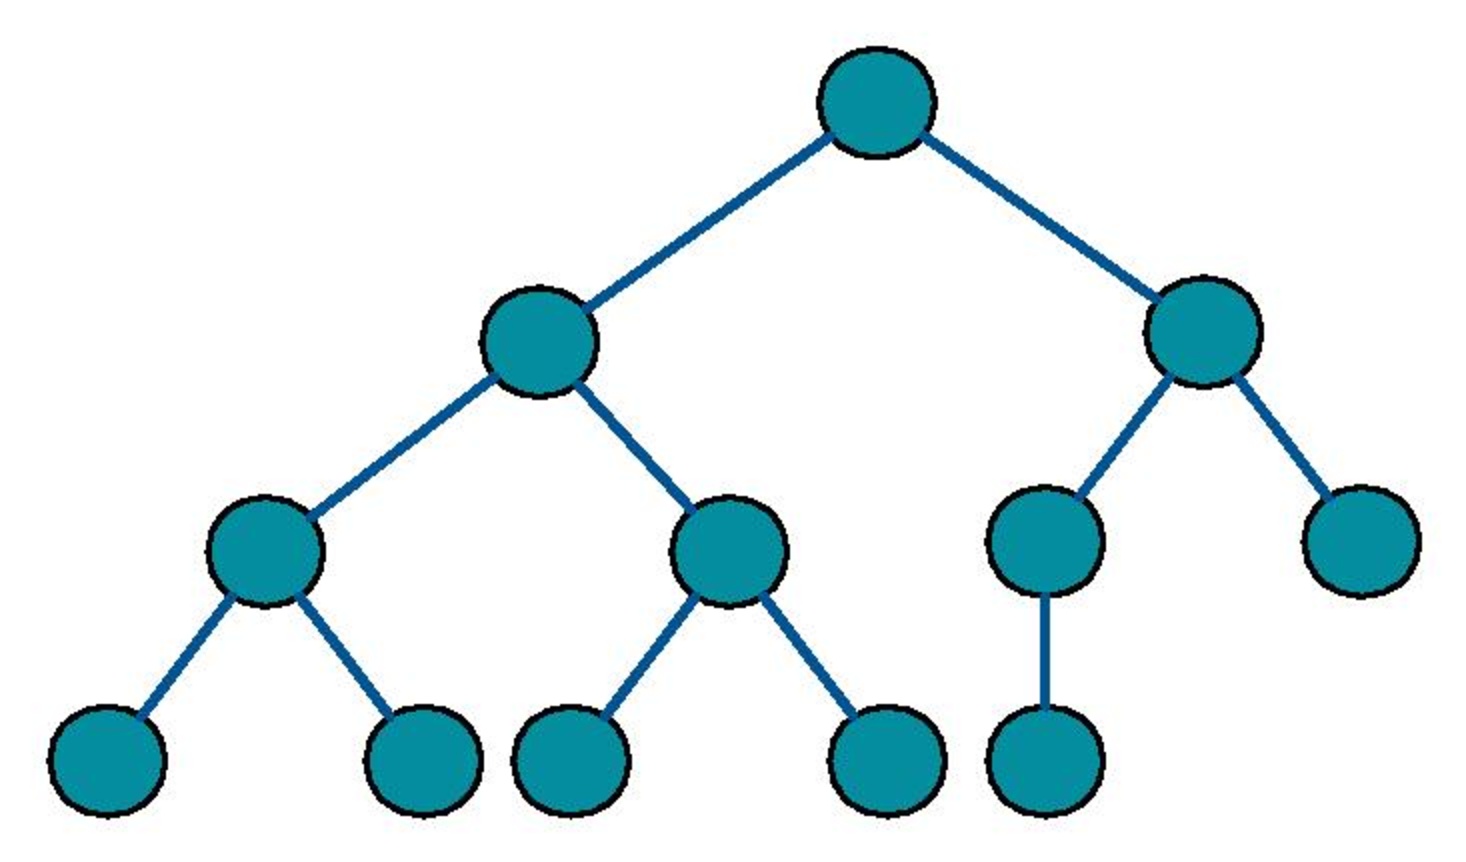 Структура бинарного дерева